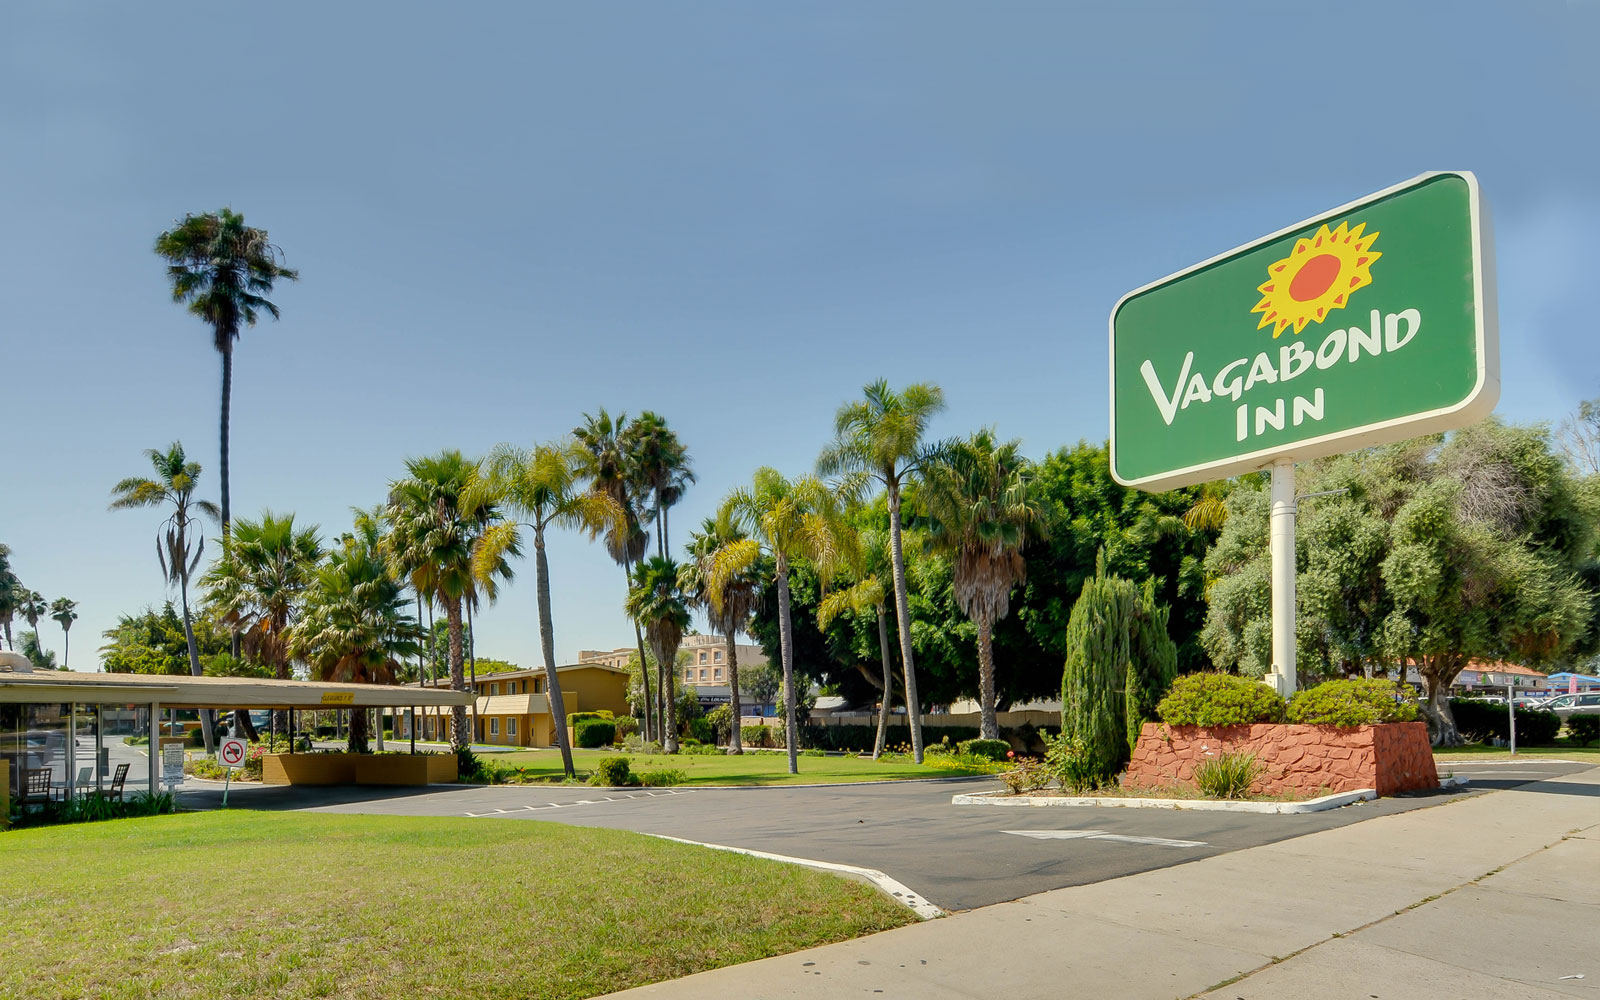 Vagabond Inn Hotels - California